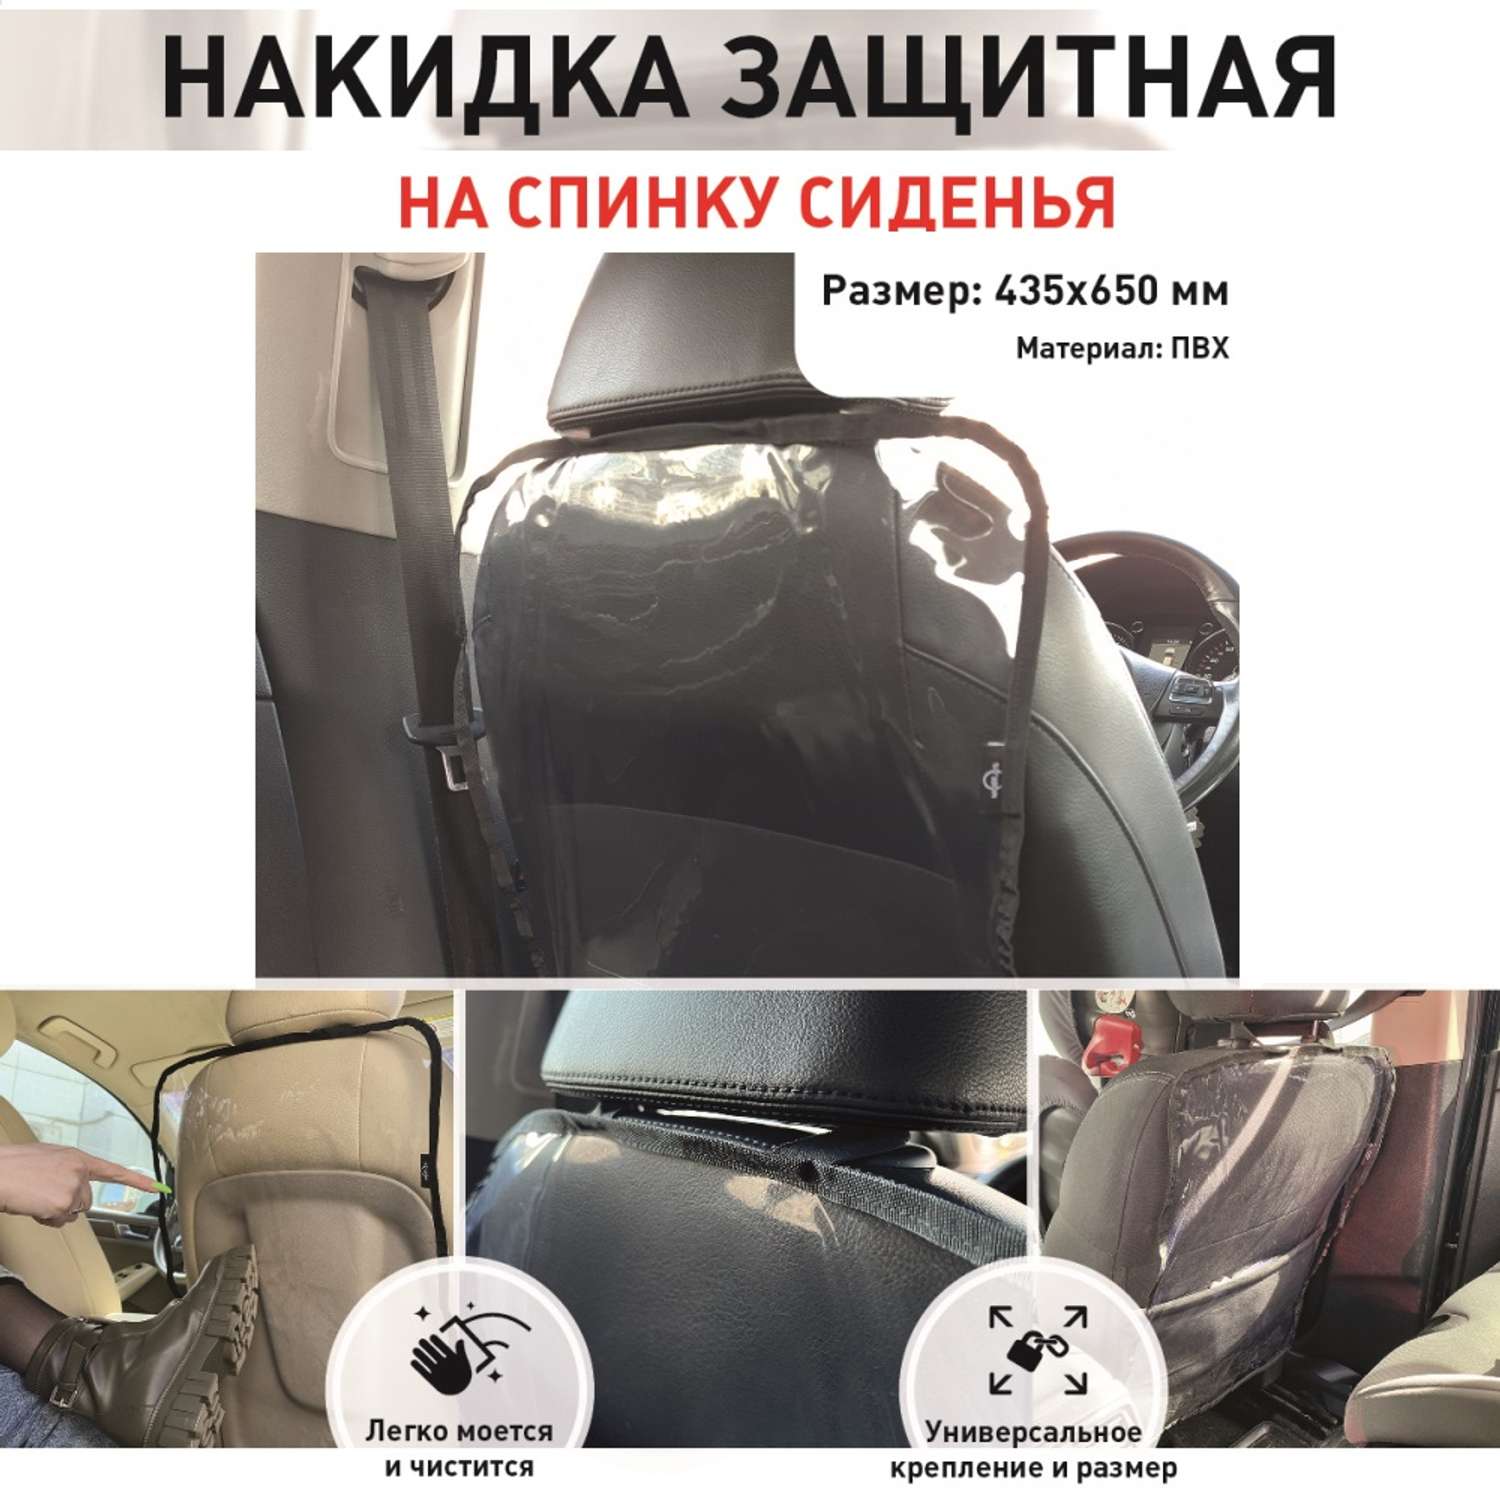 Защитная накидка Mobylos прозрачная защита от детских ног на спинку сиденья автомобиля - фото 3